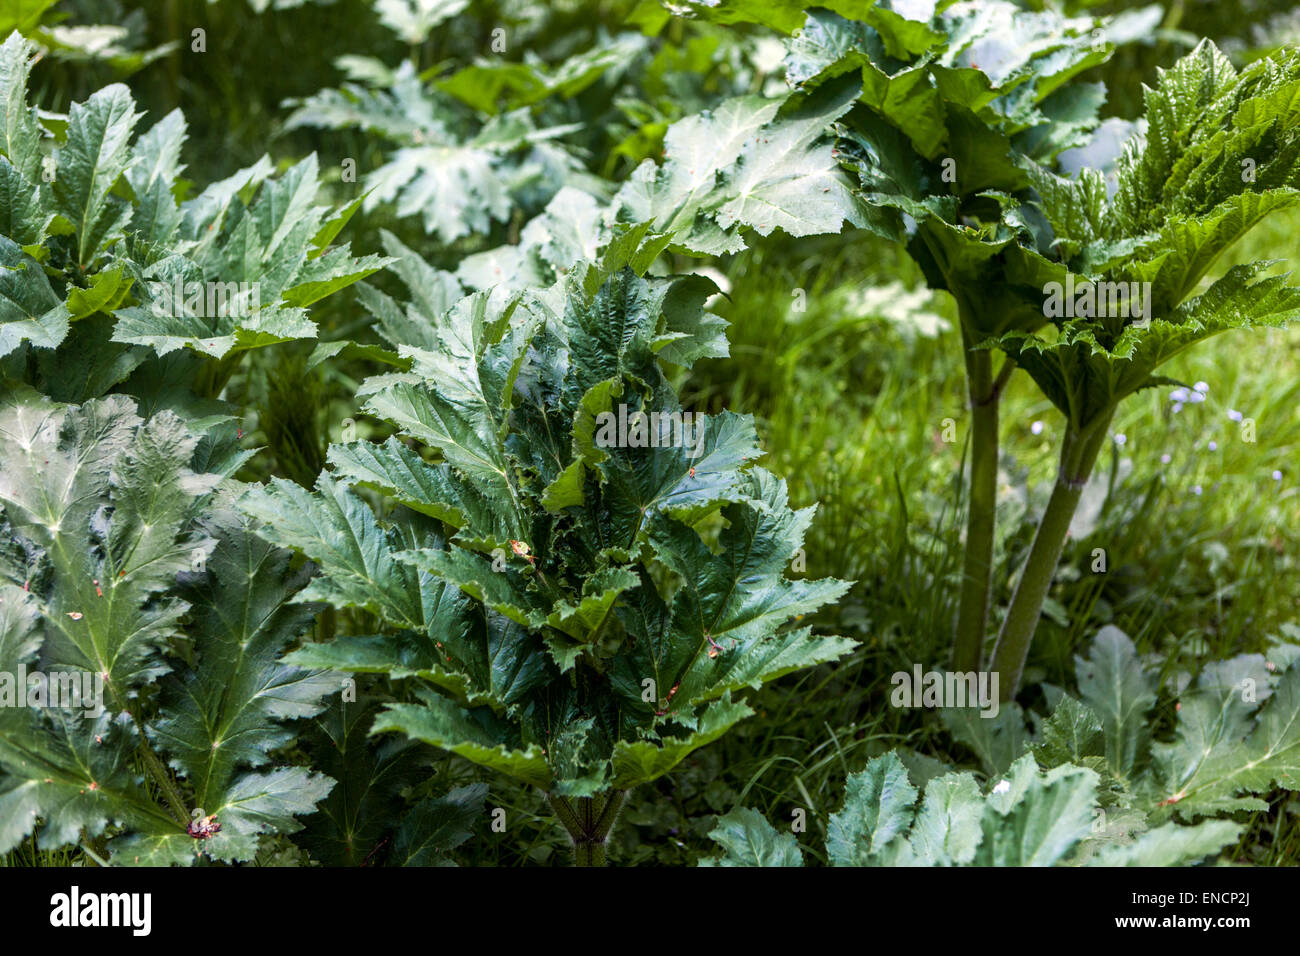 Giant hogweed Heracleum mantegazzianum Stock Photo